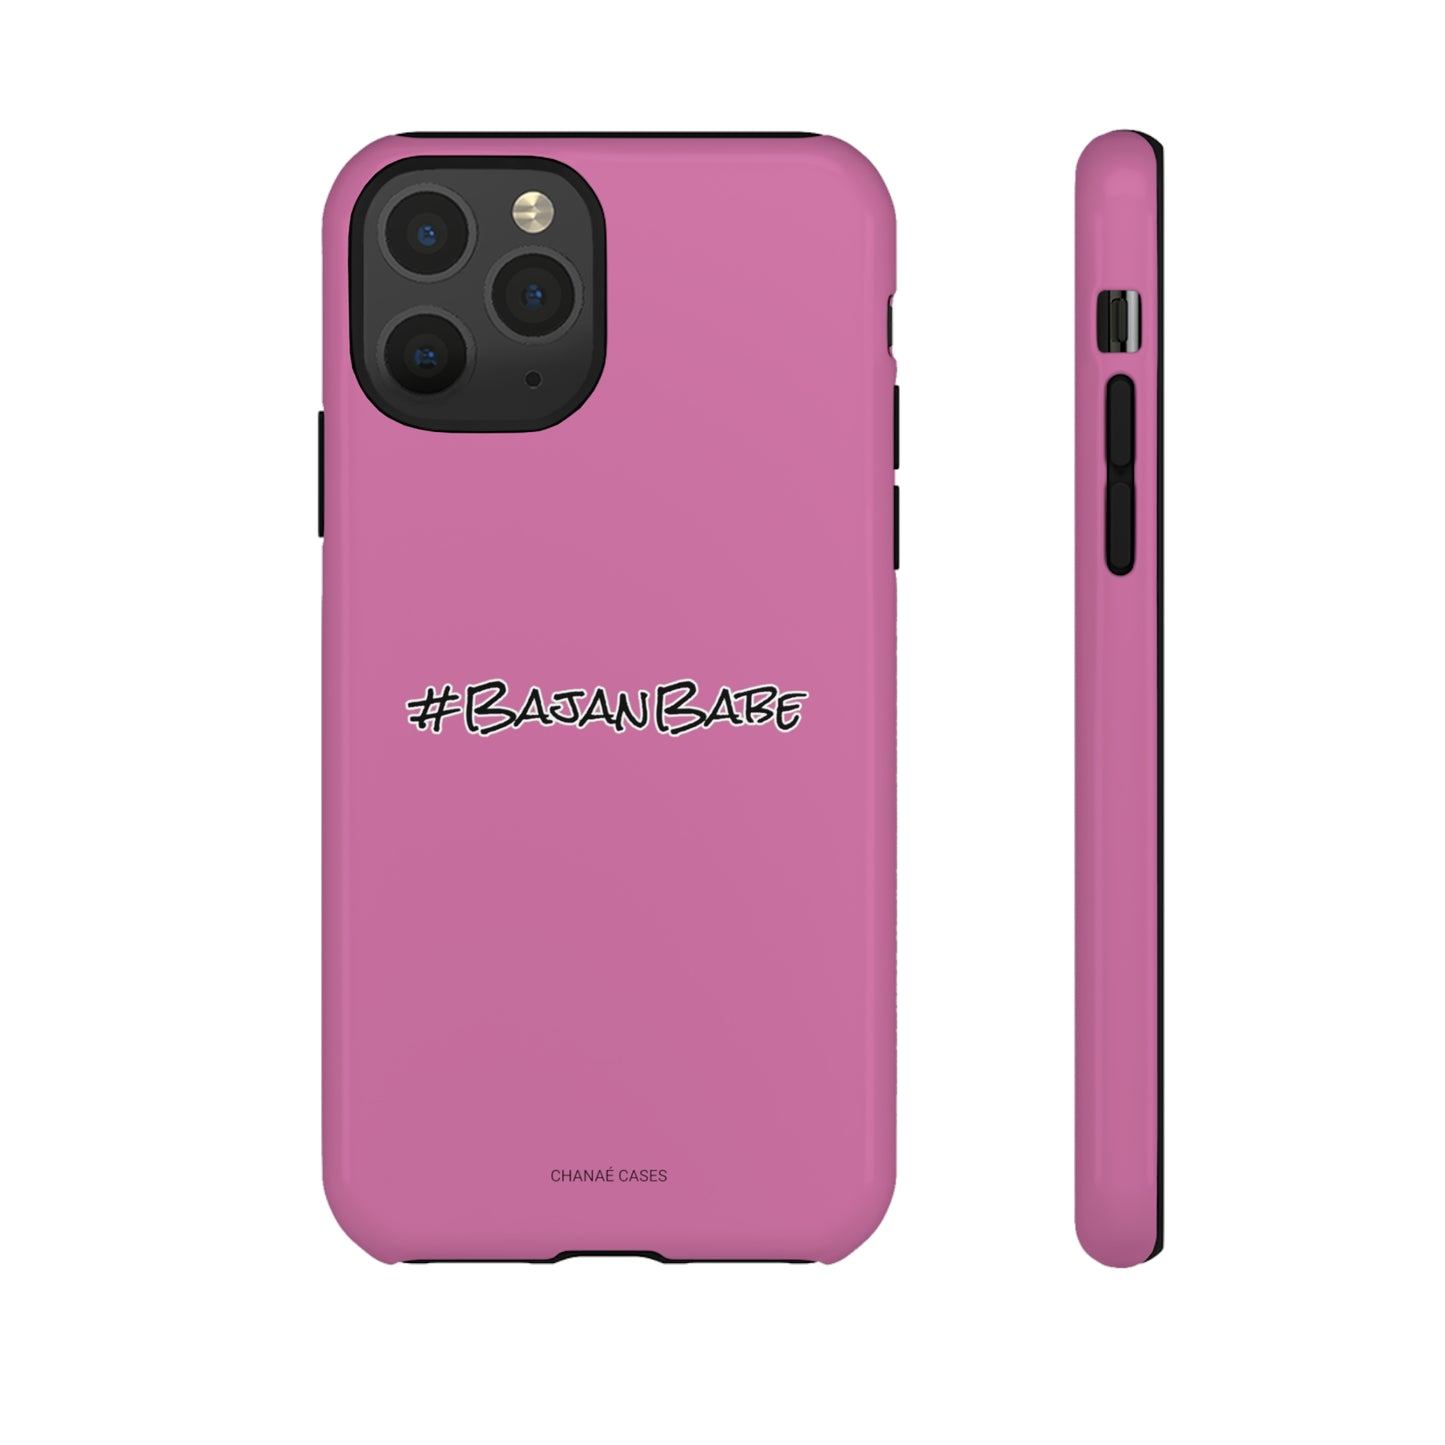 #BajanBabe iPhone "Tough" Case (Pink)